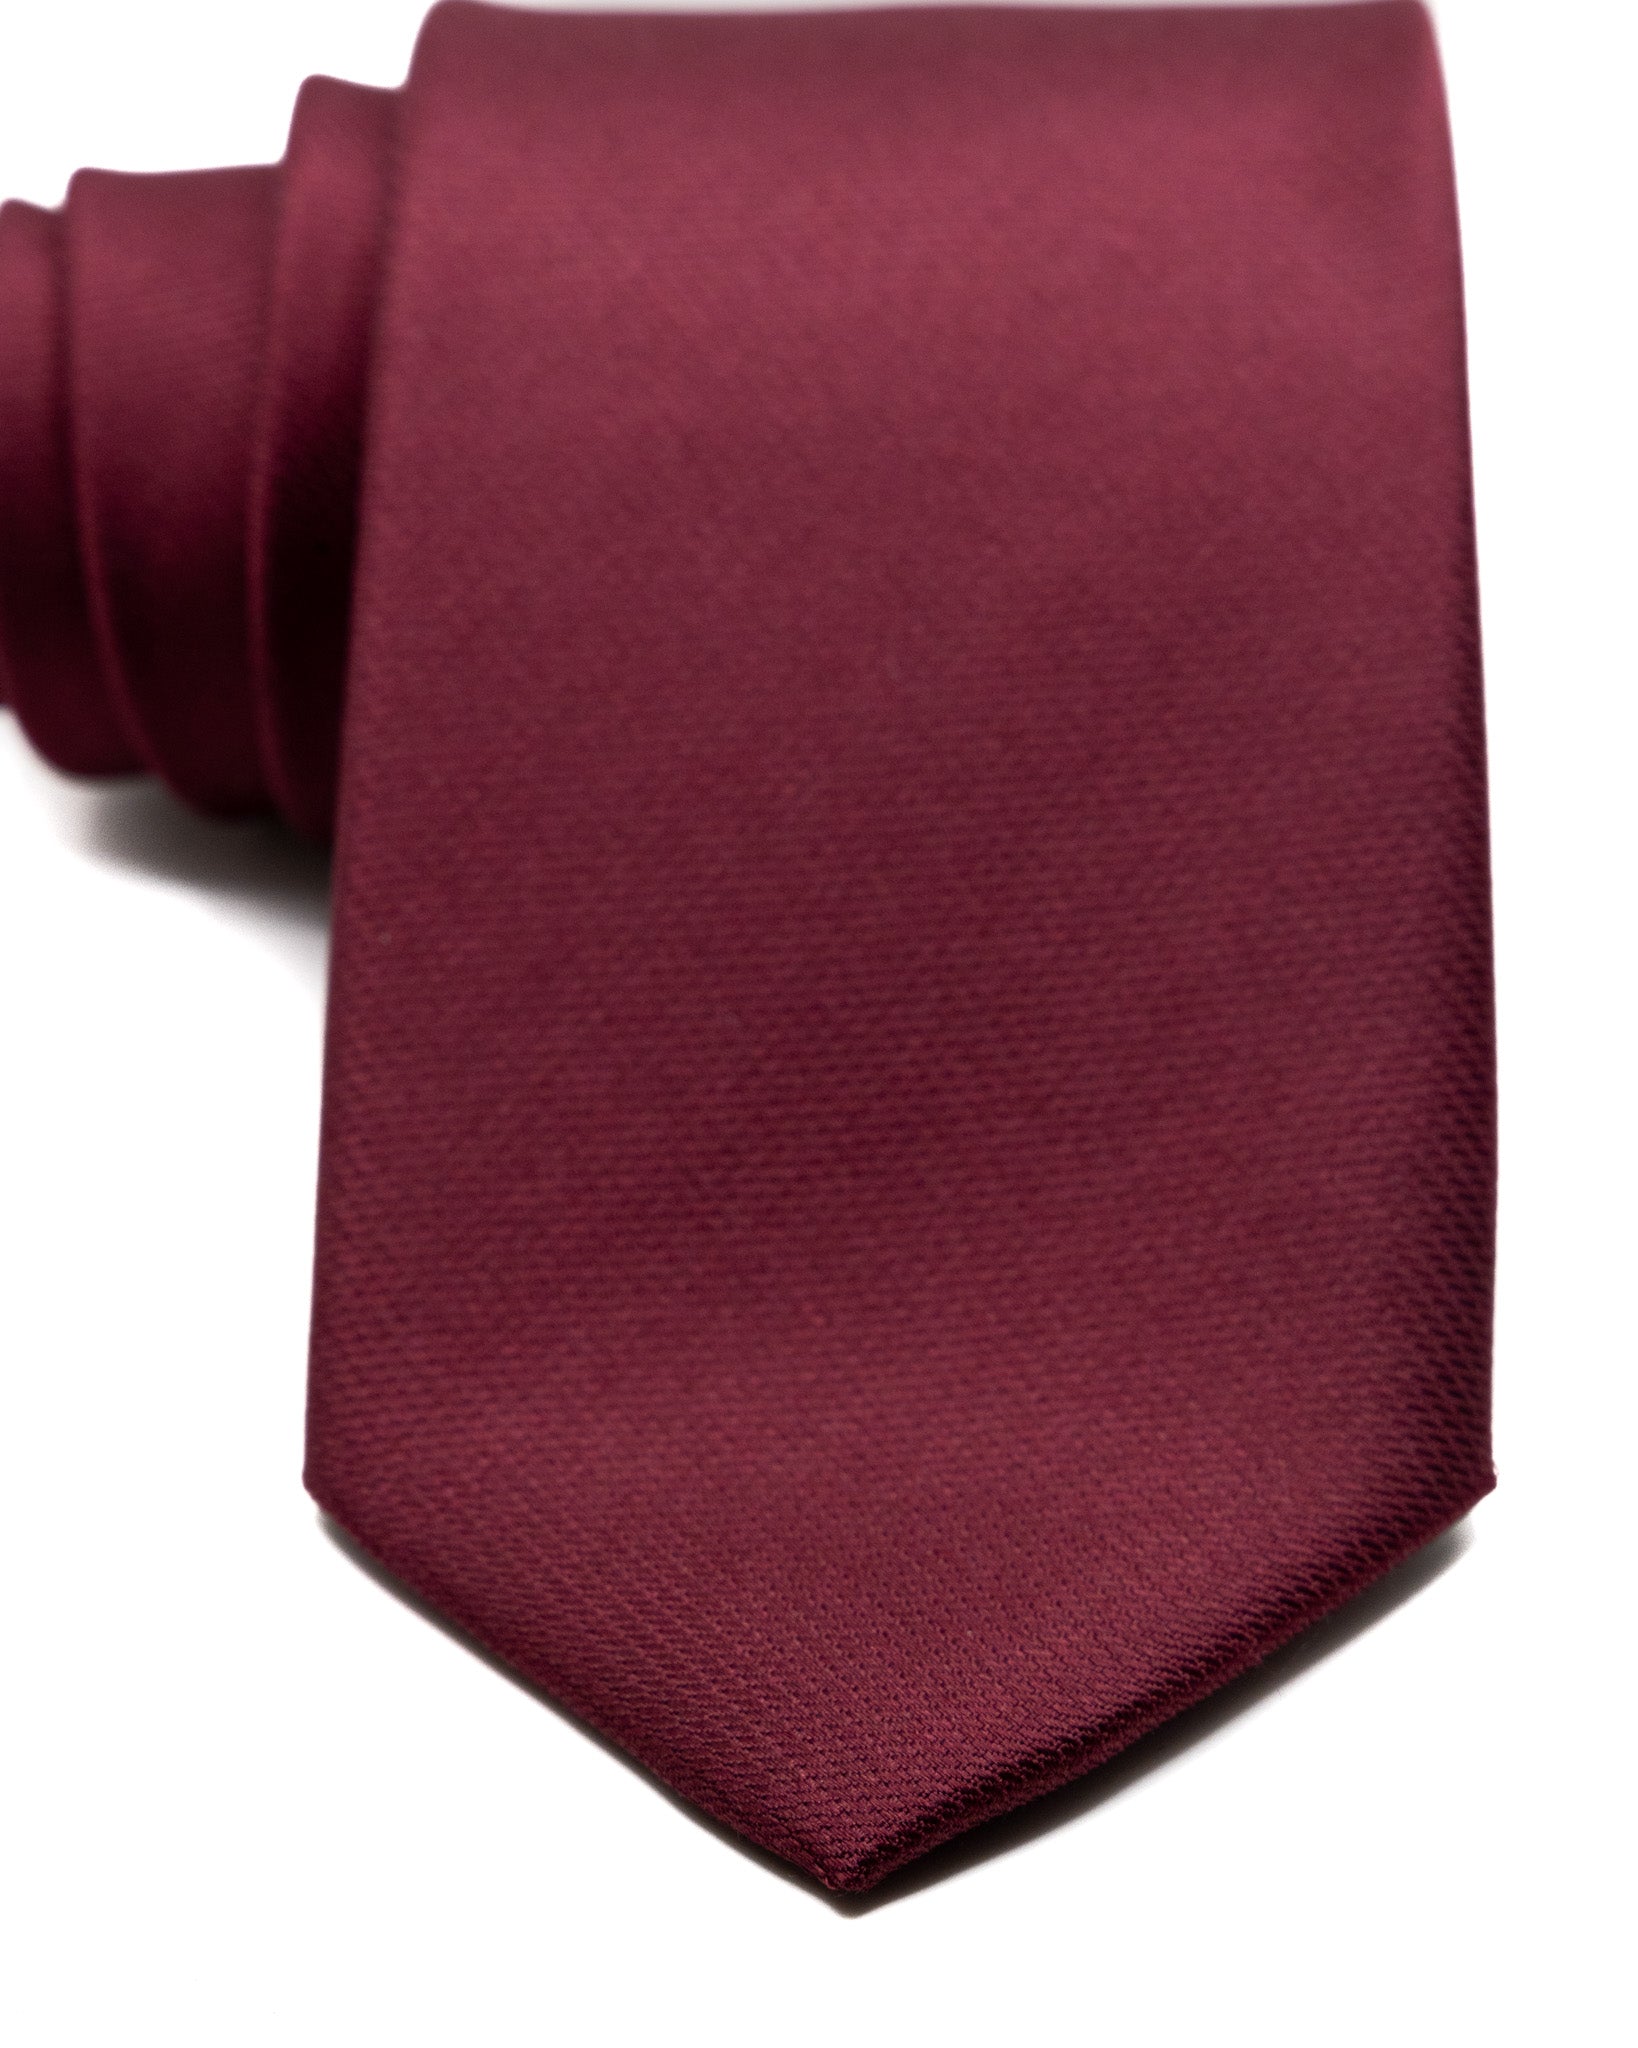 Cravatta - in seta armaturata bordeaux